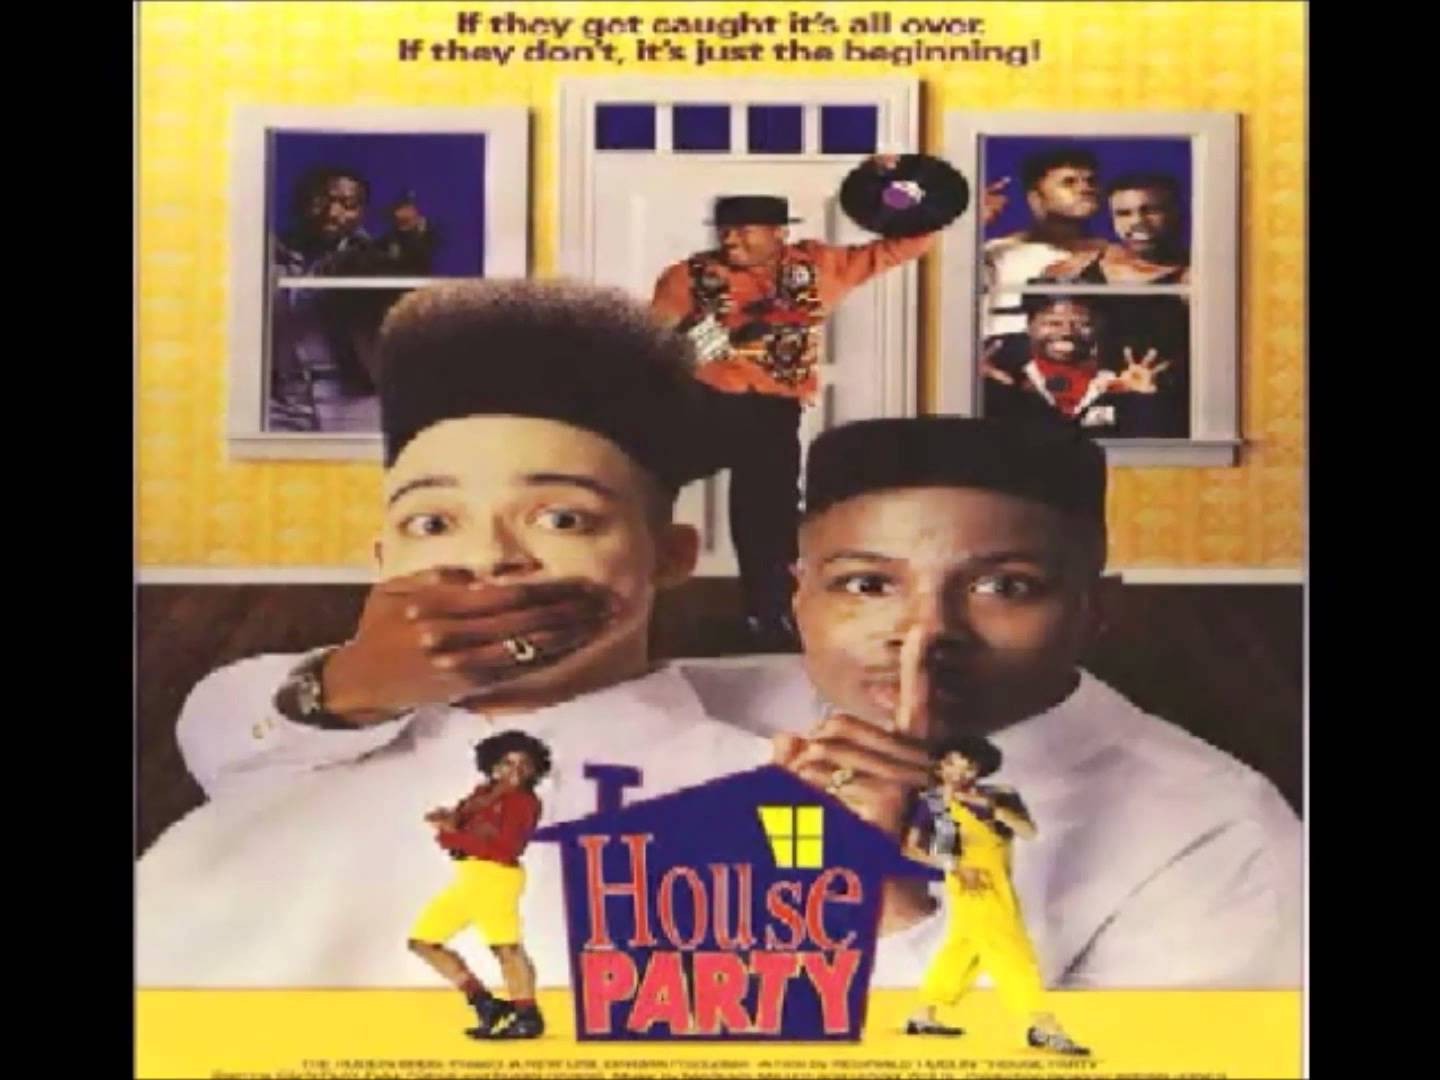 House Party (soundtrack)